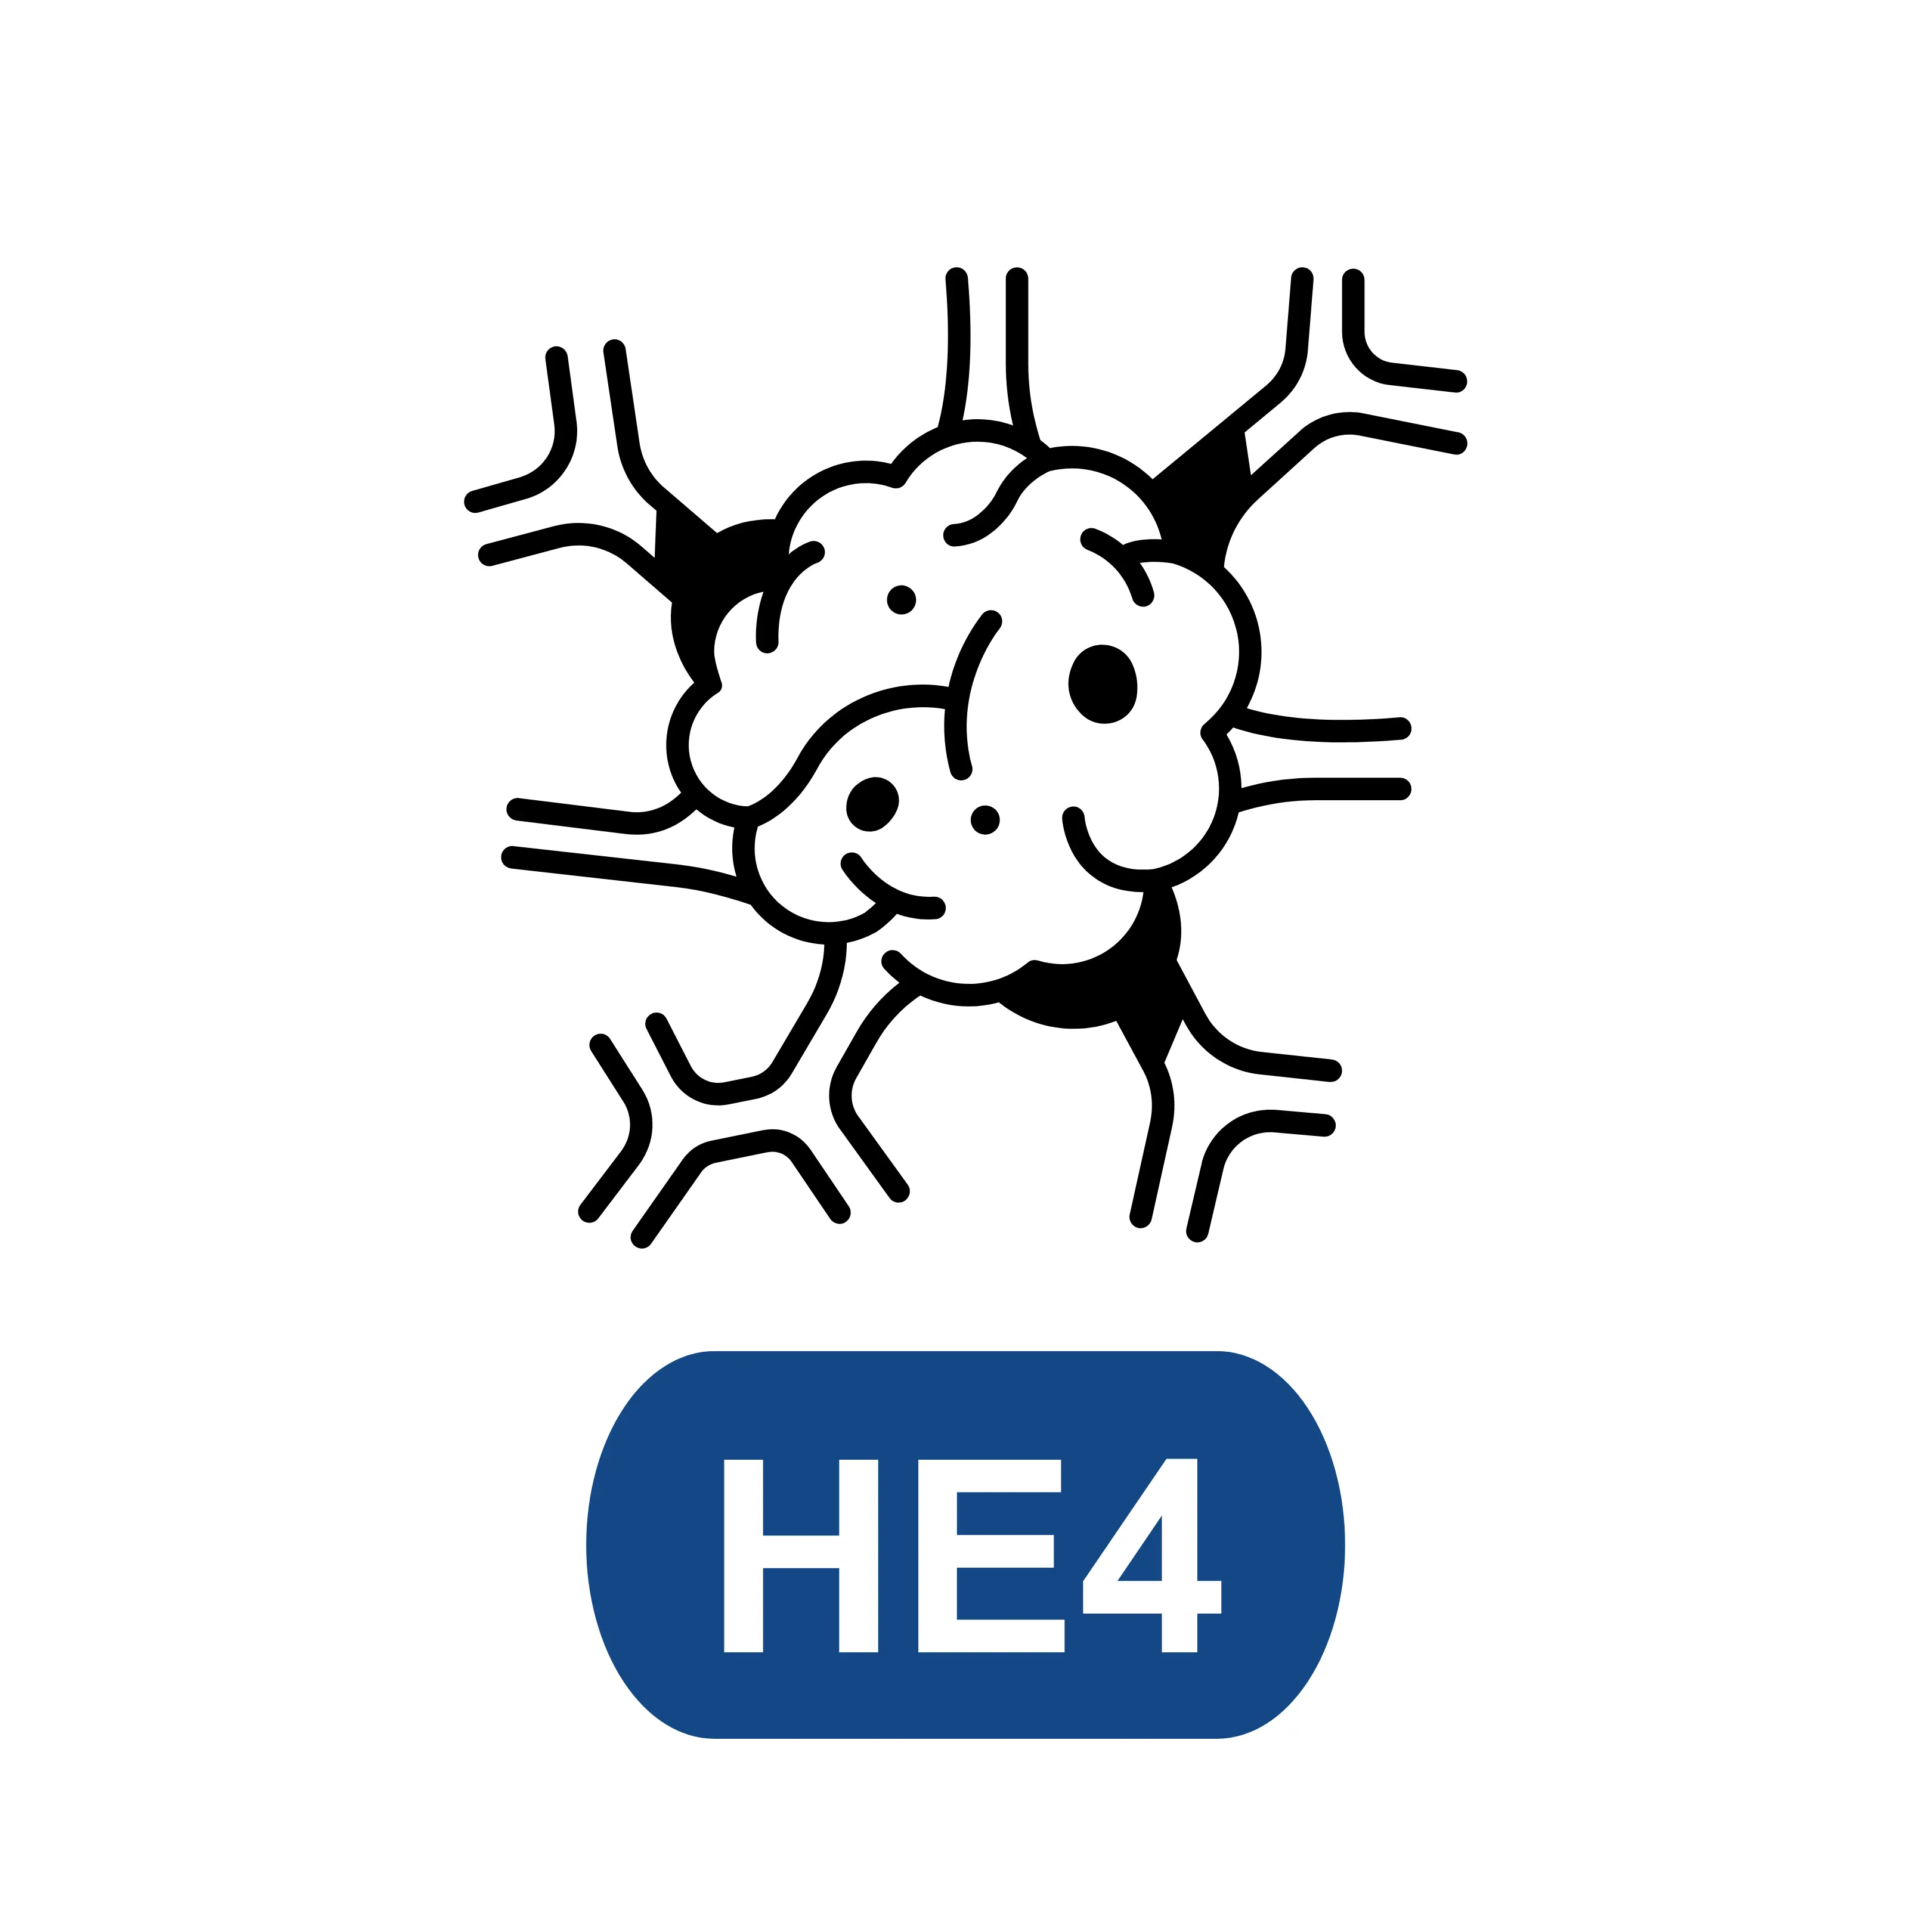 Human Epididymis 4 (HE4)